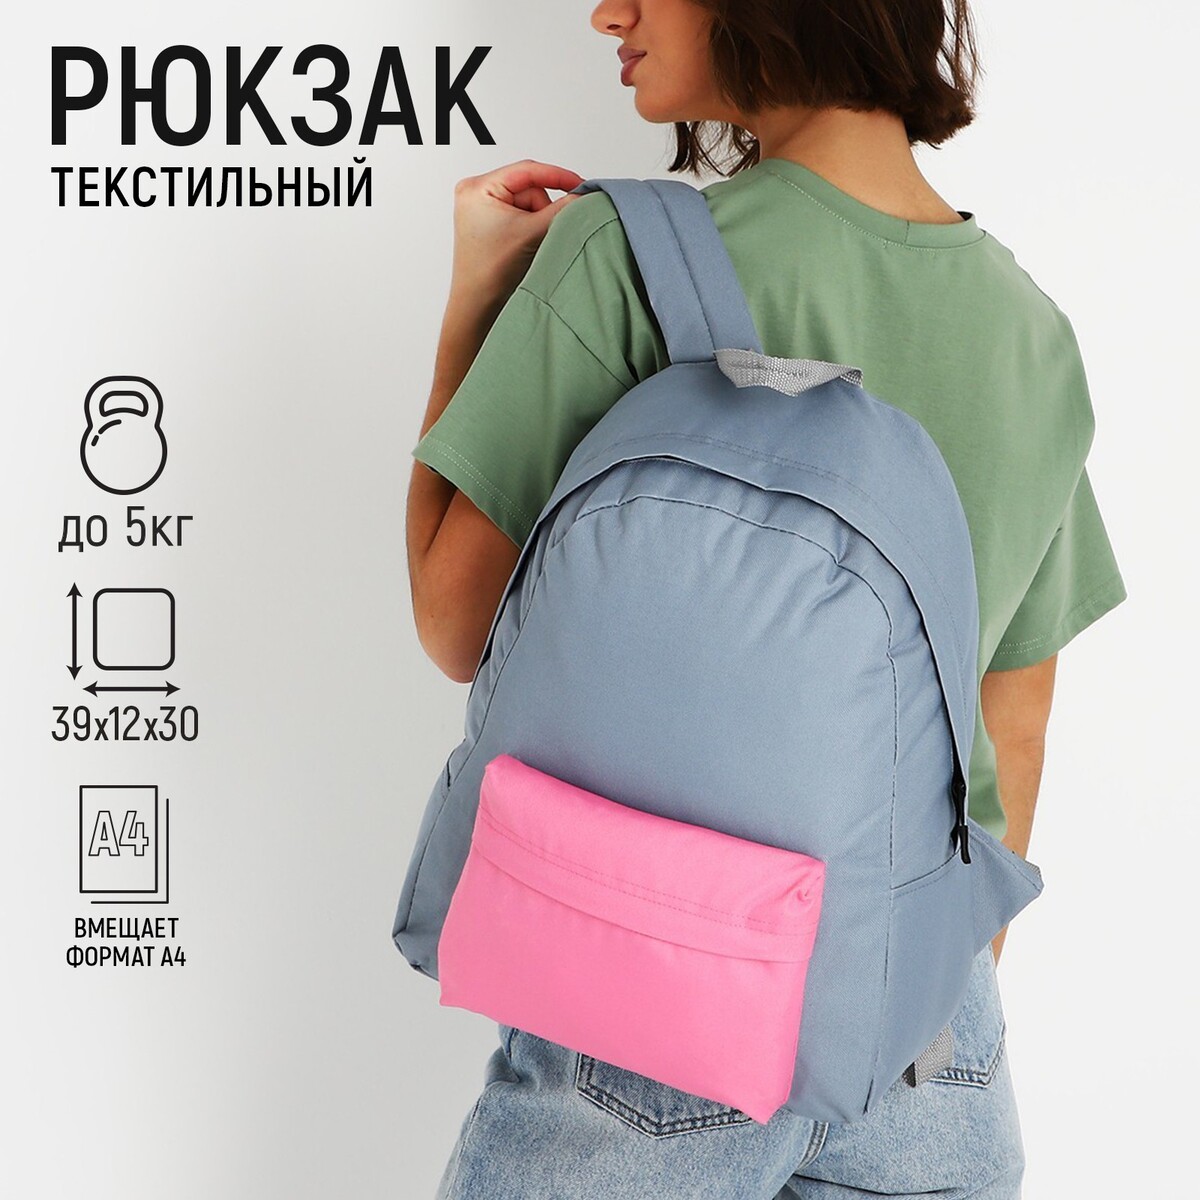 Рюкзак текстильный с цветным карманом, 30х39х12 см, серый/розовый рюкзак текстильный bright emotions 38 х 12 х 30 см